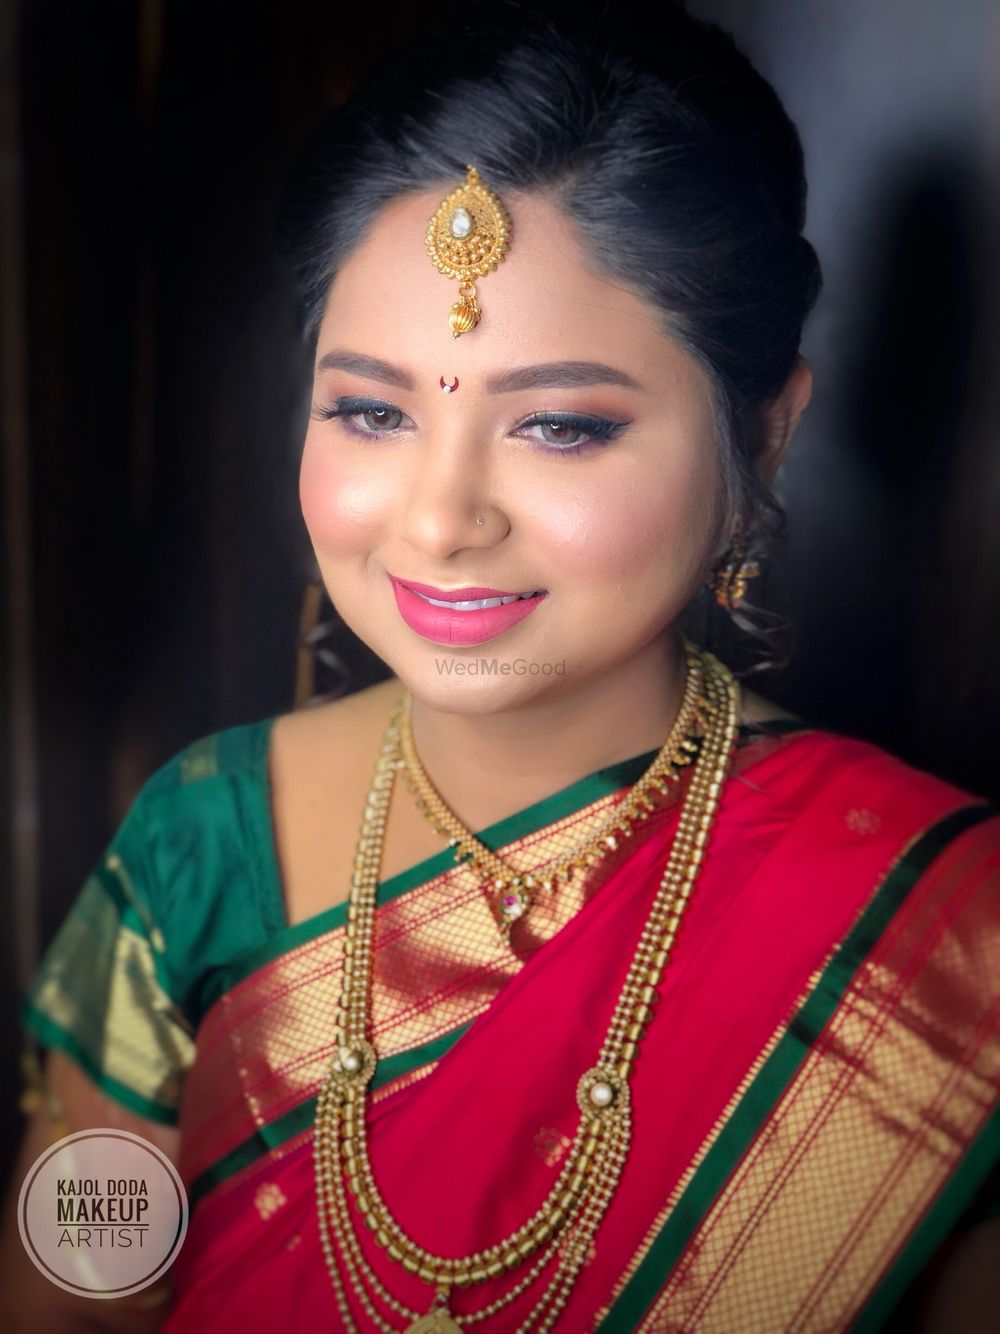 Photo From Maharashtrian Brides ❤️ - By Kajol Doda Makeup